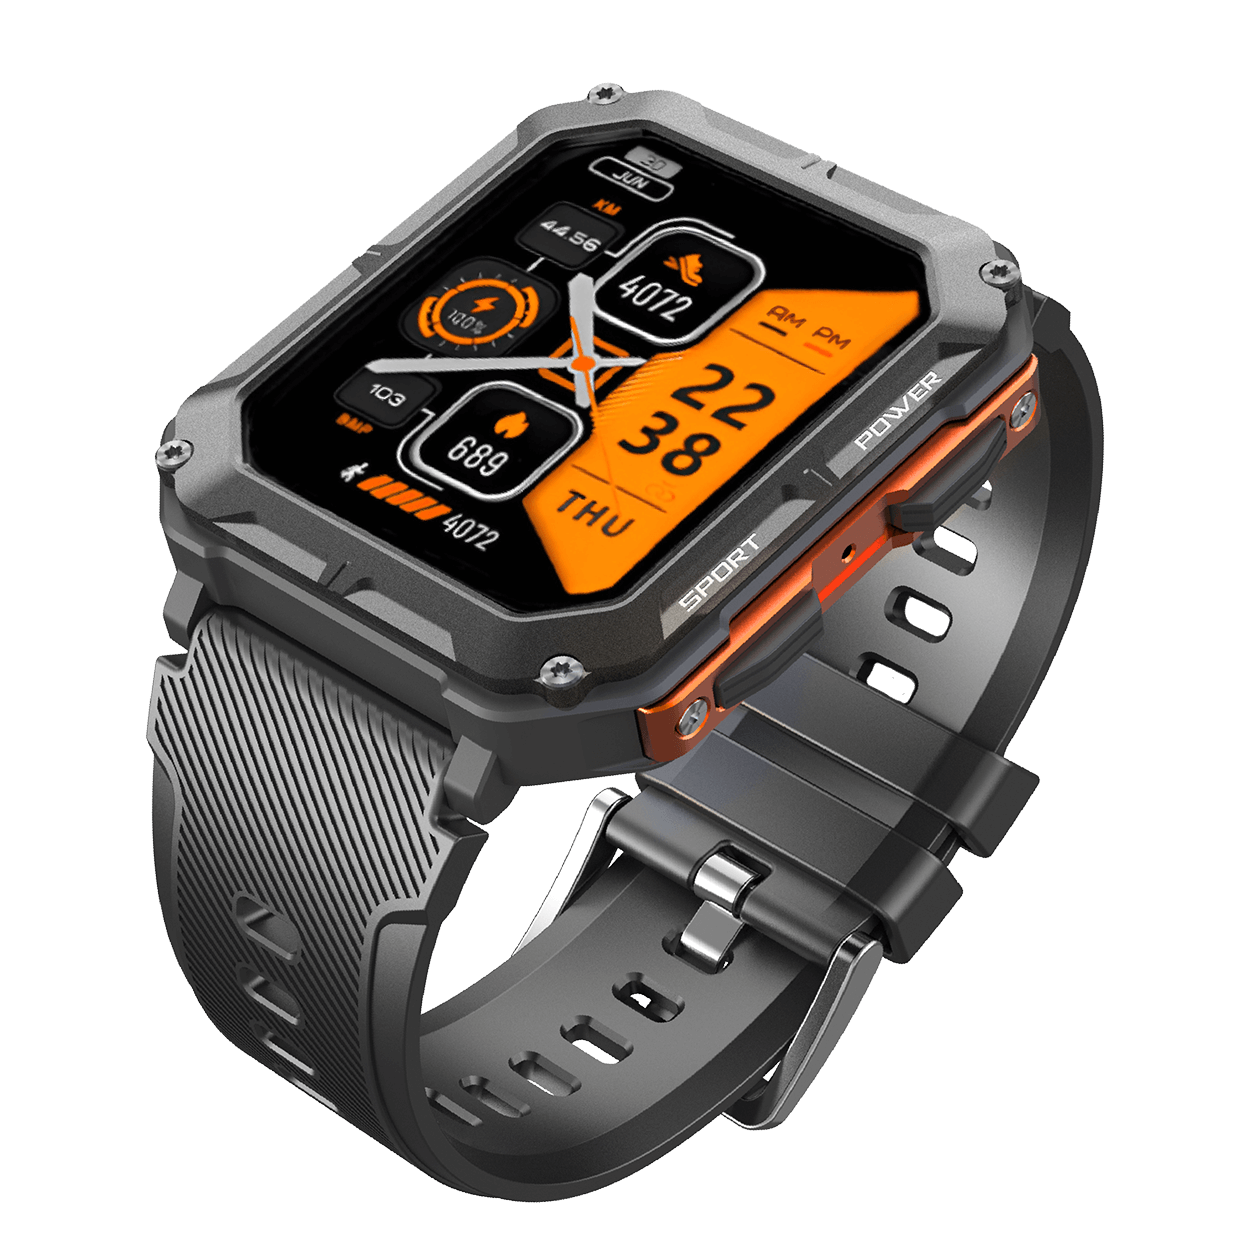 TitanShield Smartwatch - Unzerstörbar